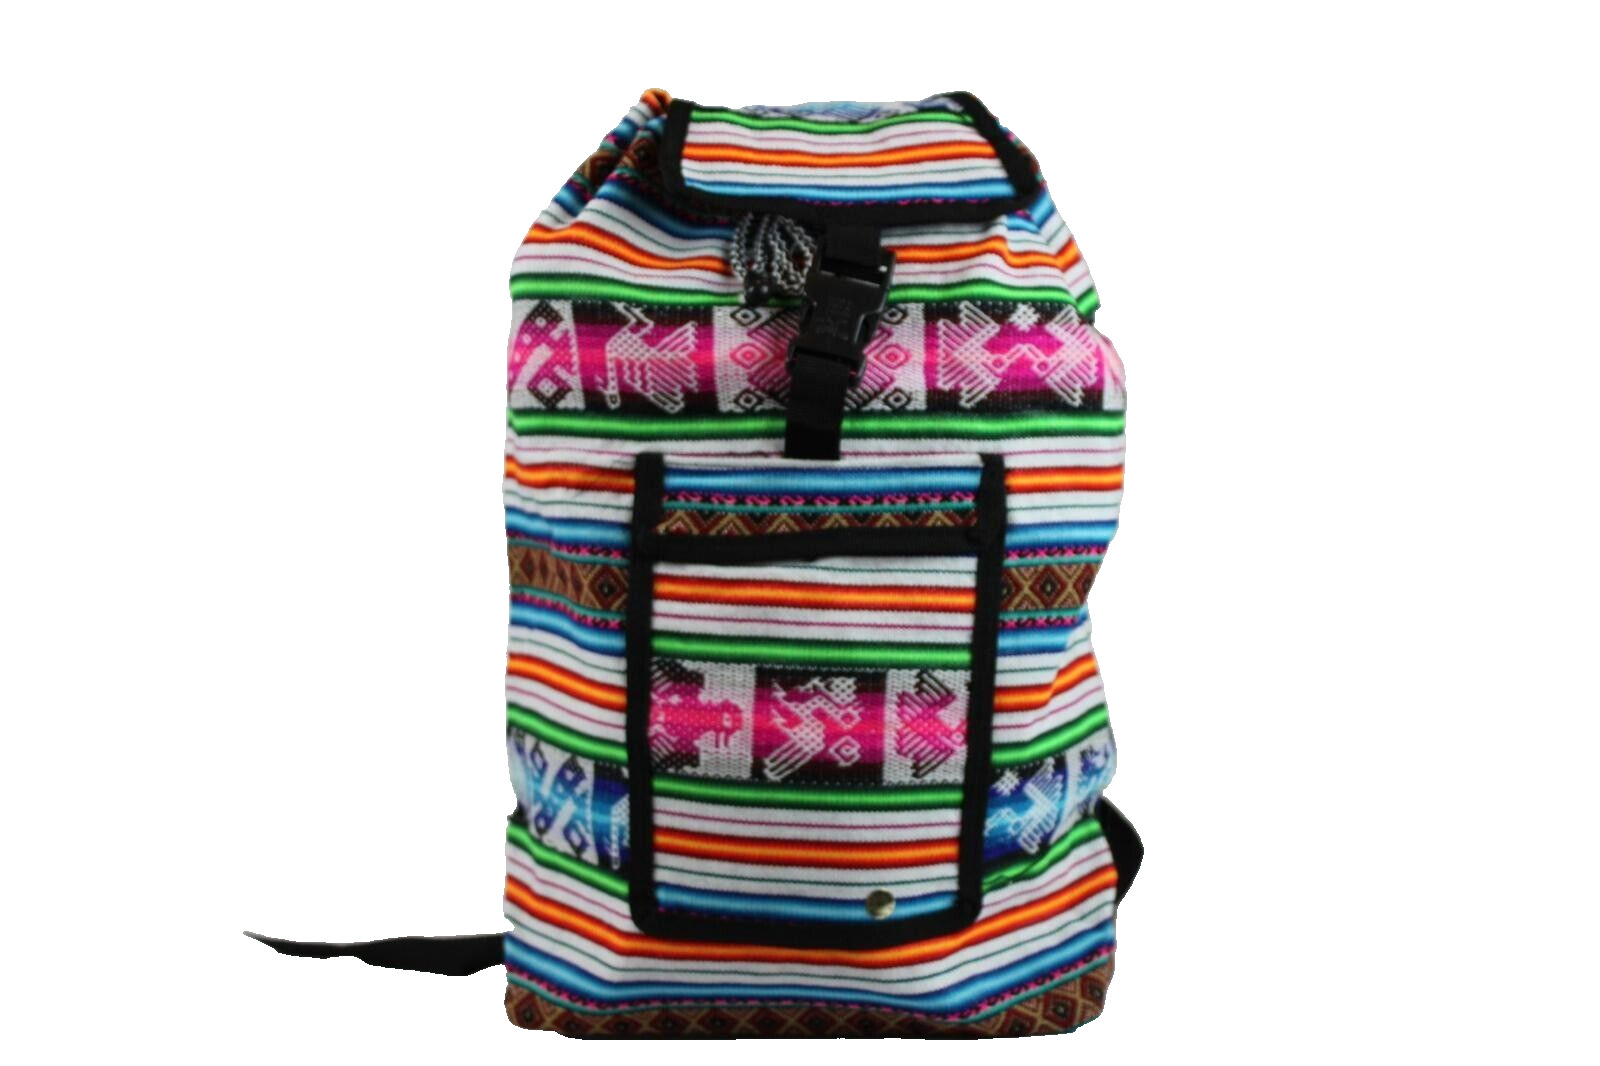 Peruvian Blanket Backpack - Mochila de Manta de Colores